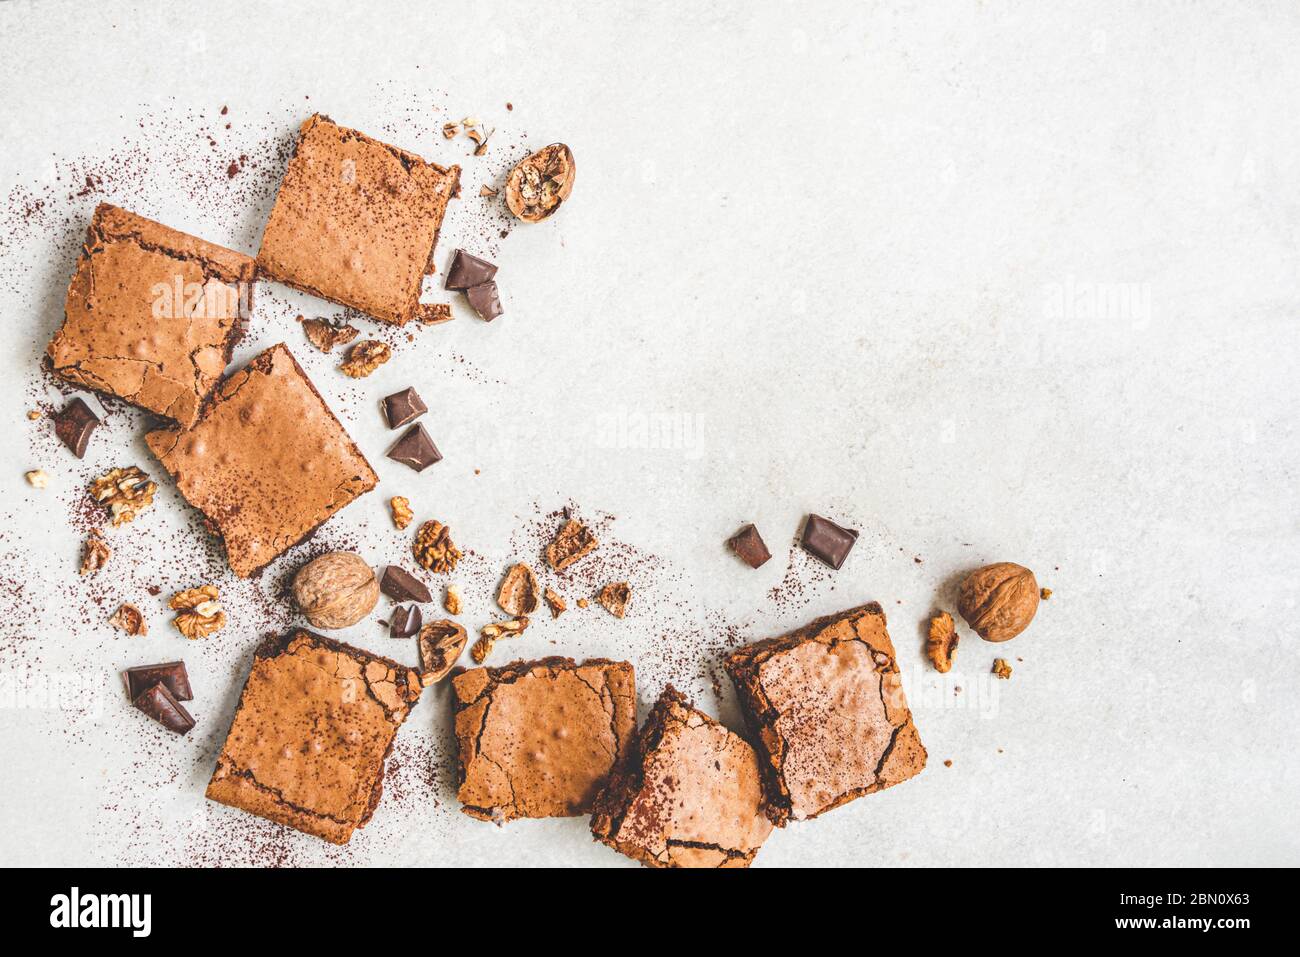 Vue de dessus du gâteau maison au brownie fraîchement préparé avec des noix, du chocolat et de la poudre de cacao sur fond rustique blanc. Banque D'Images